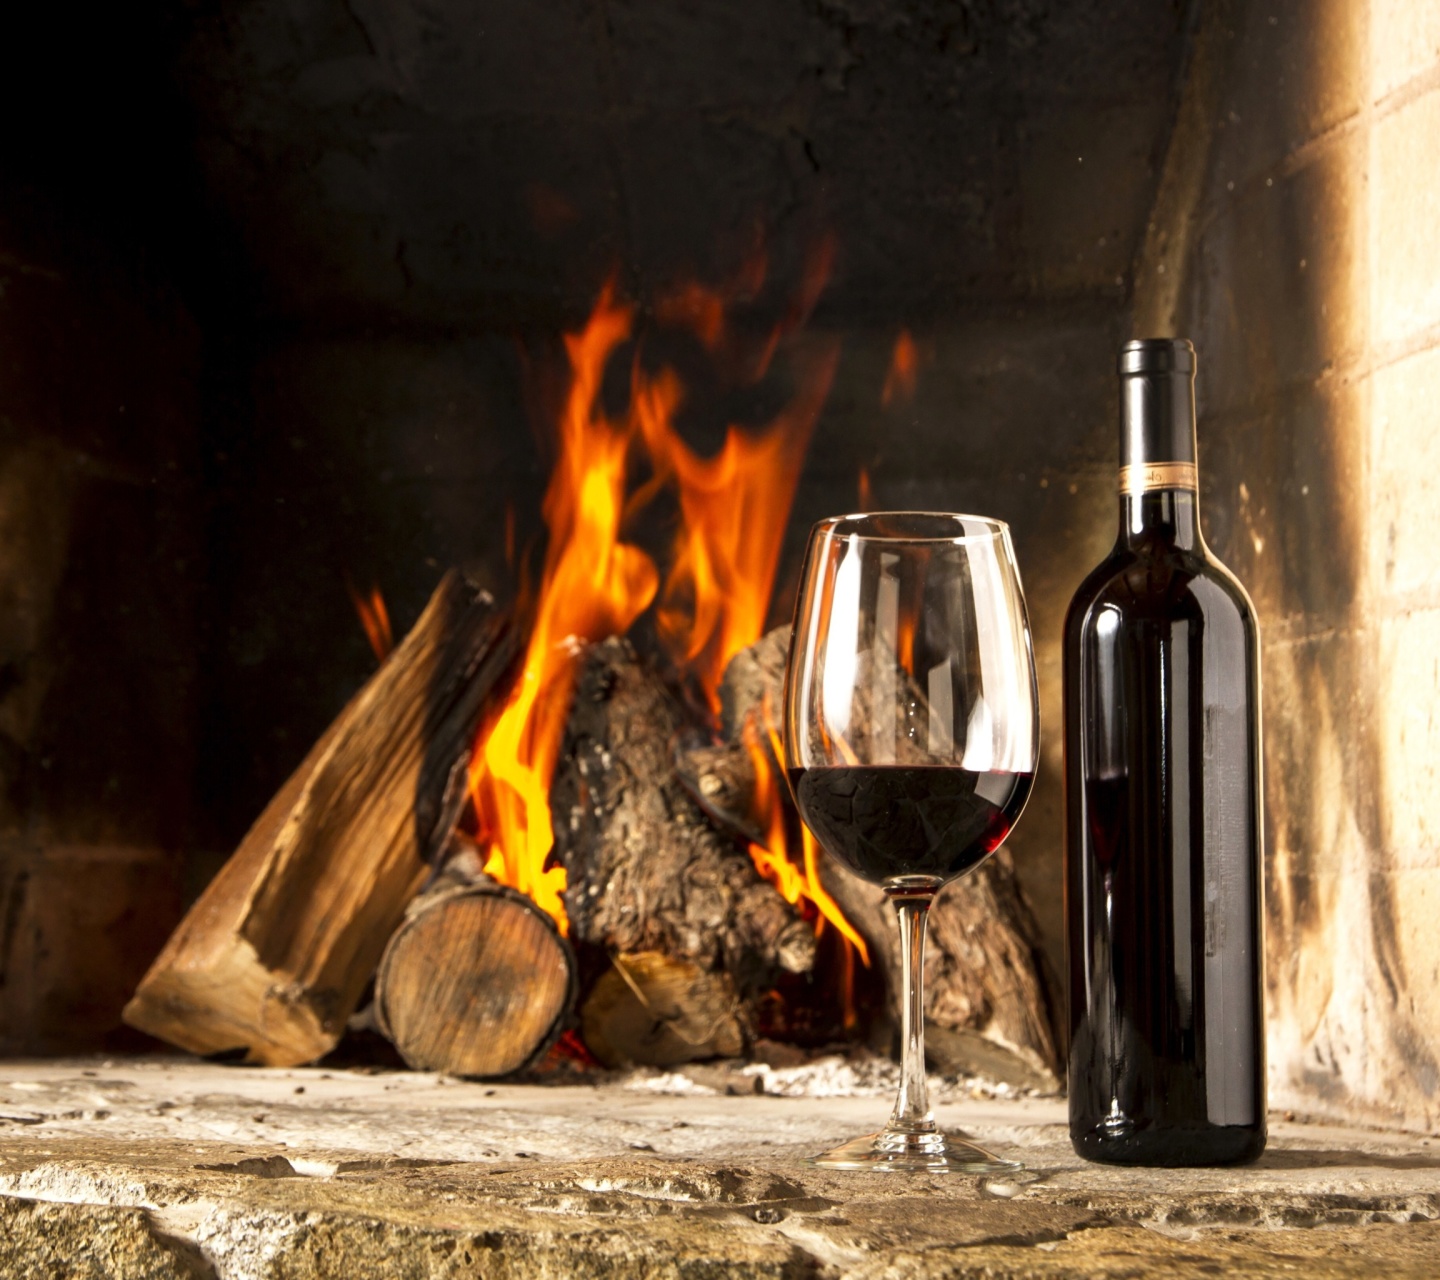 Обои Wine and fireplace 1440x1280